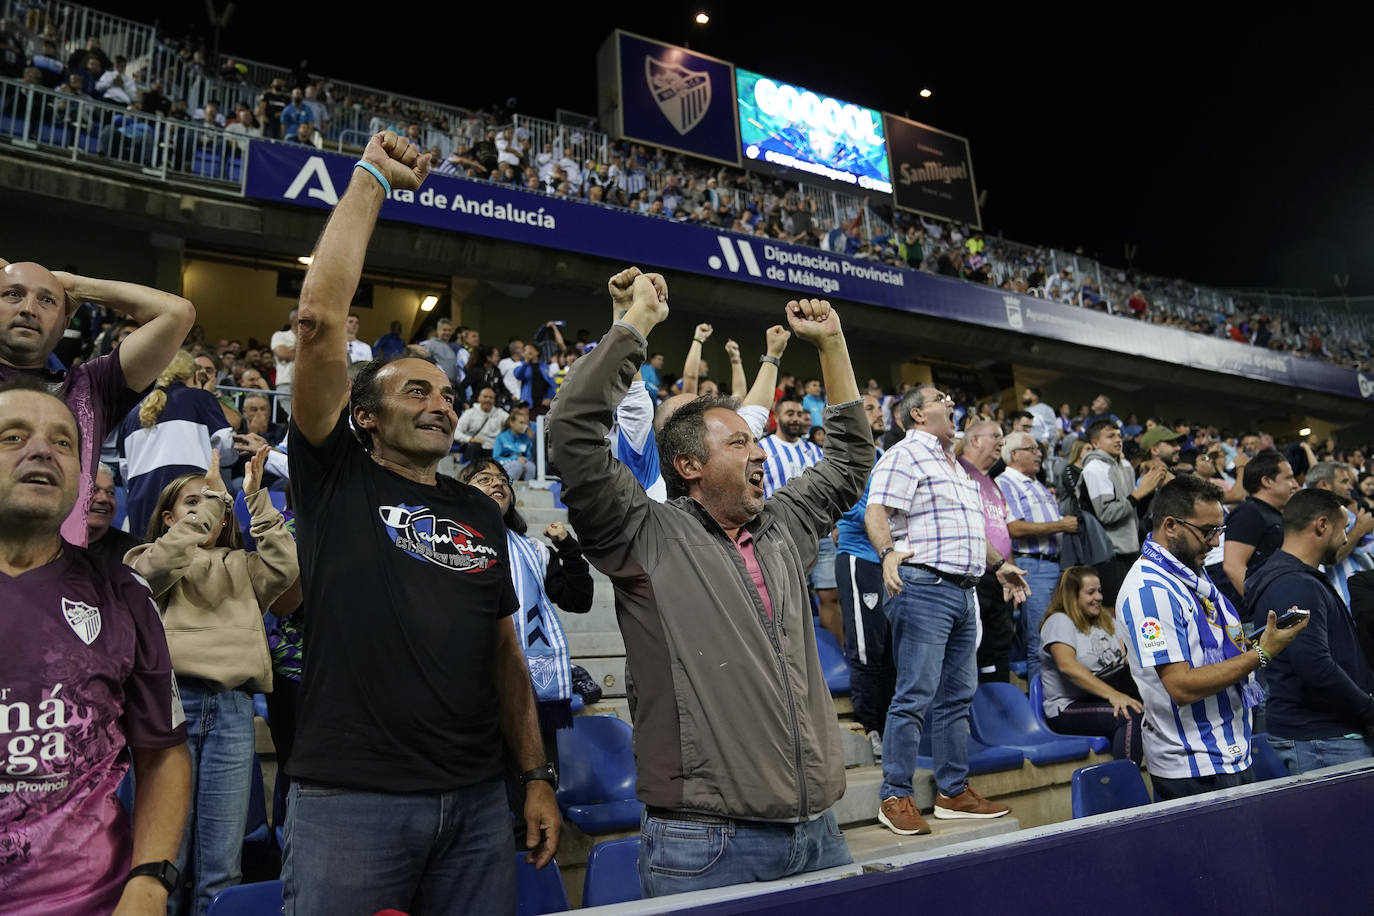 El Málaga arañó el empate después de gran parte del partido por detrás en el marcador 